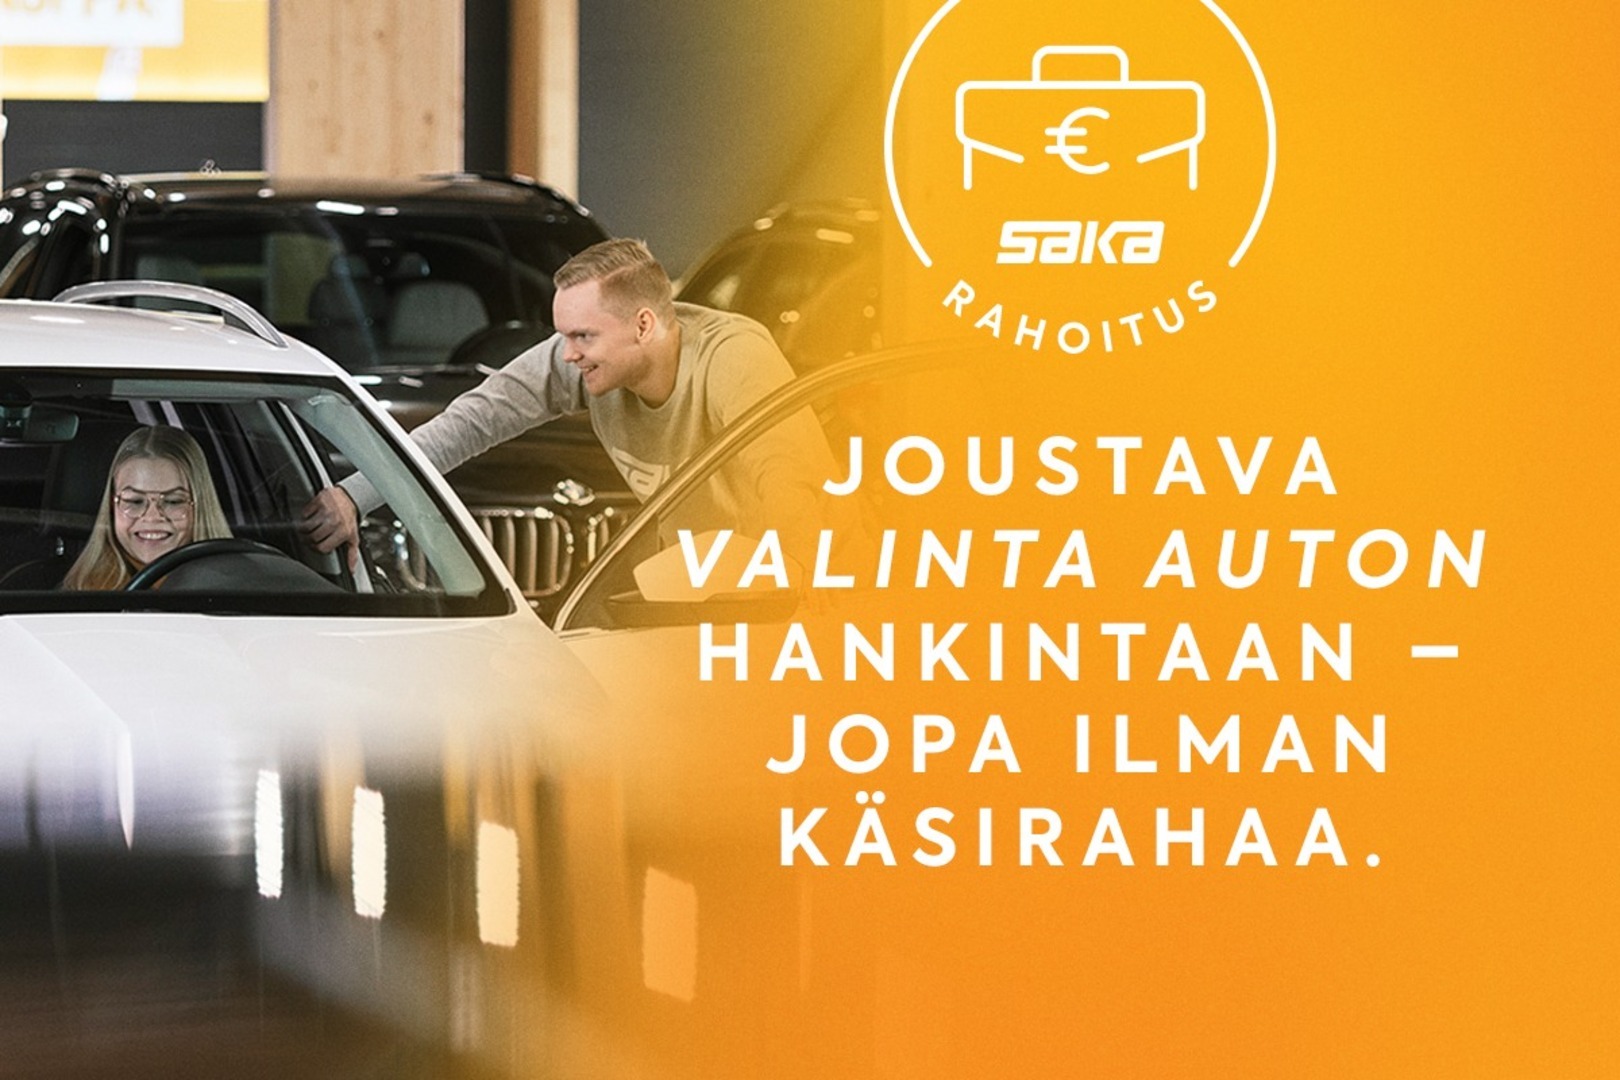 Harmaa Viistoperä, Opel Astra – XVK-831